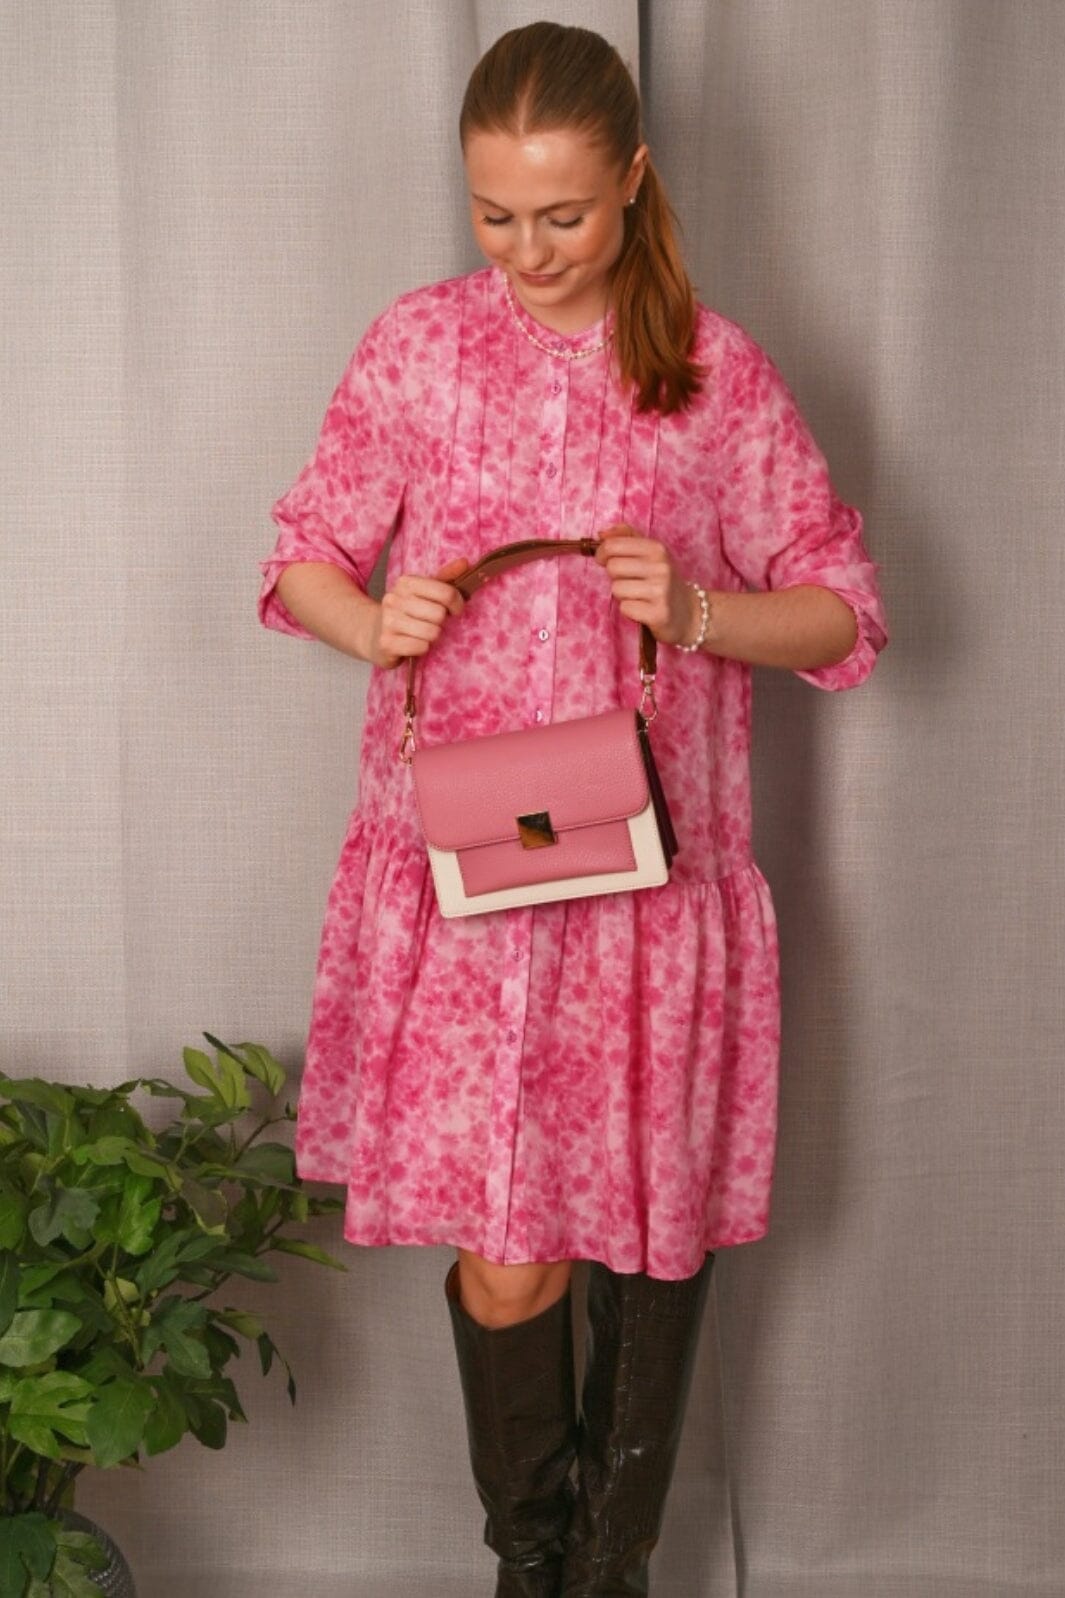 Noella - Imogene Dress - 1057 Trudy Pink Print Kjoler 